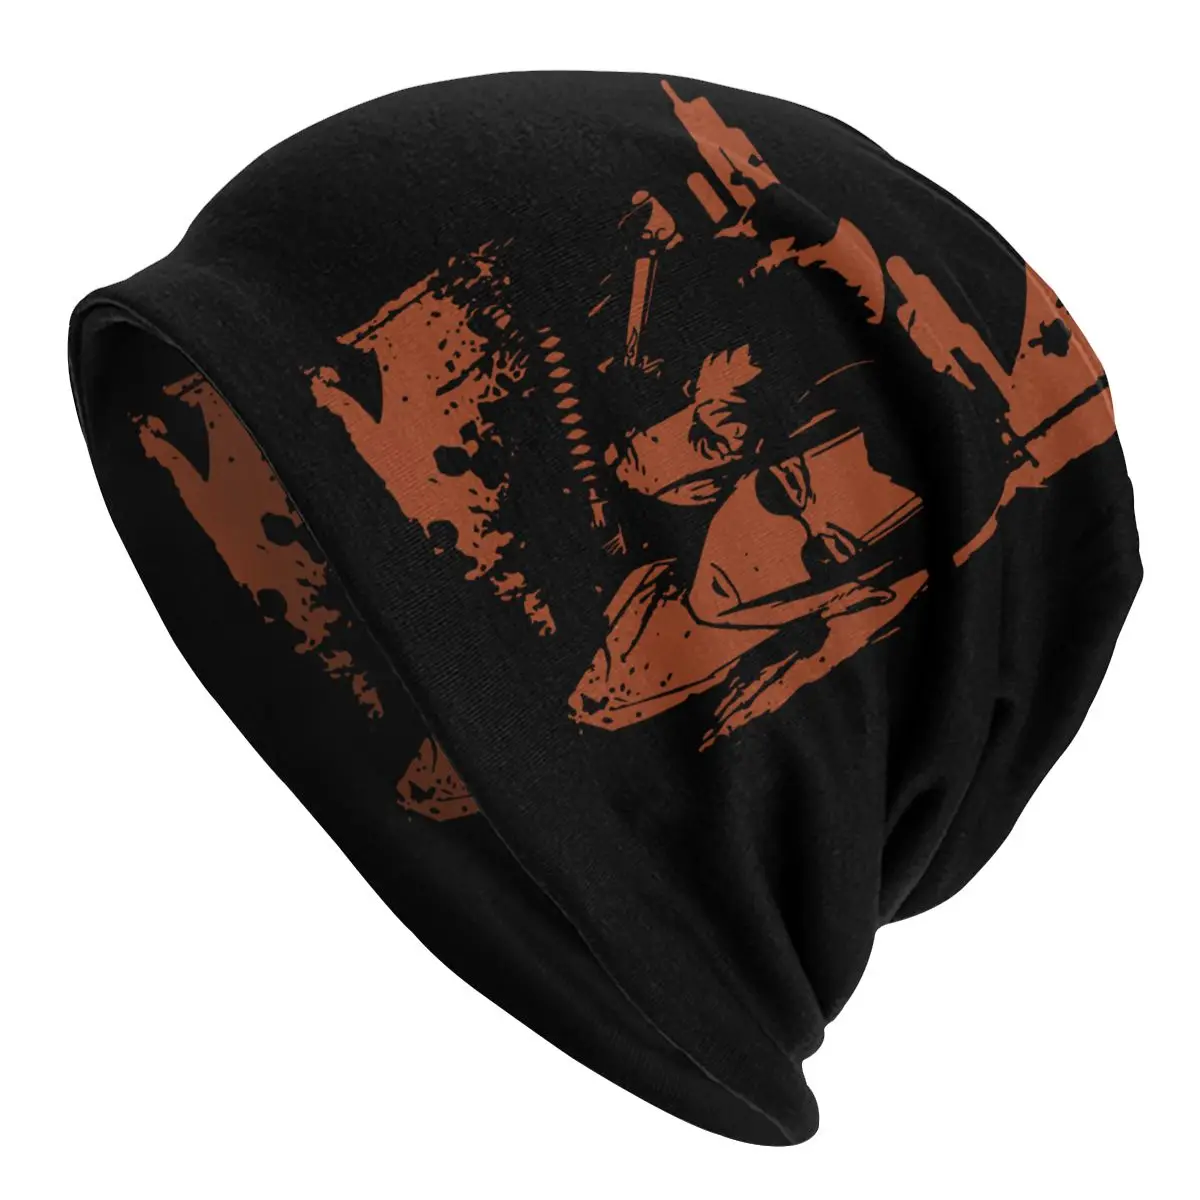 

Fuu Mugen Jin Samurai Champloo Bonnet Hats Knitted Hat Autumn Winter Ski Skullies Beanies Hats Men's Women's Adult Warm Cap